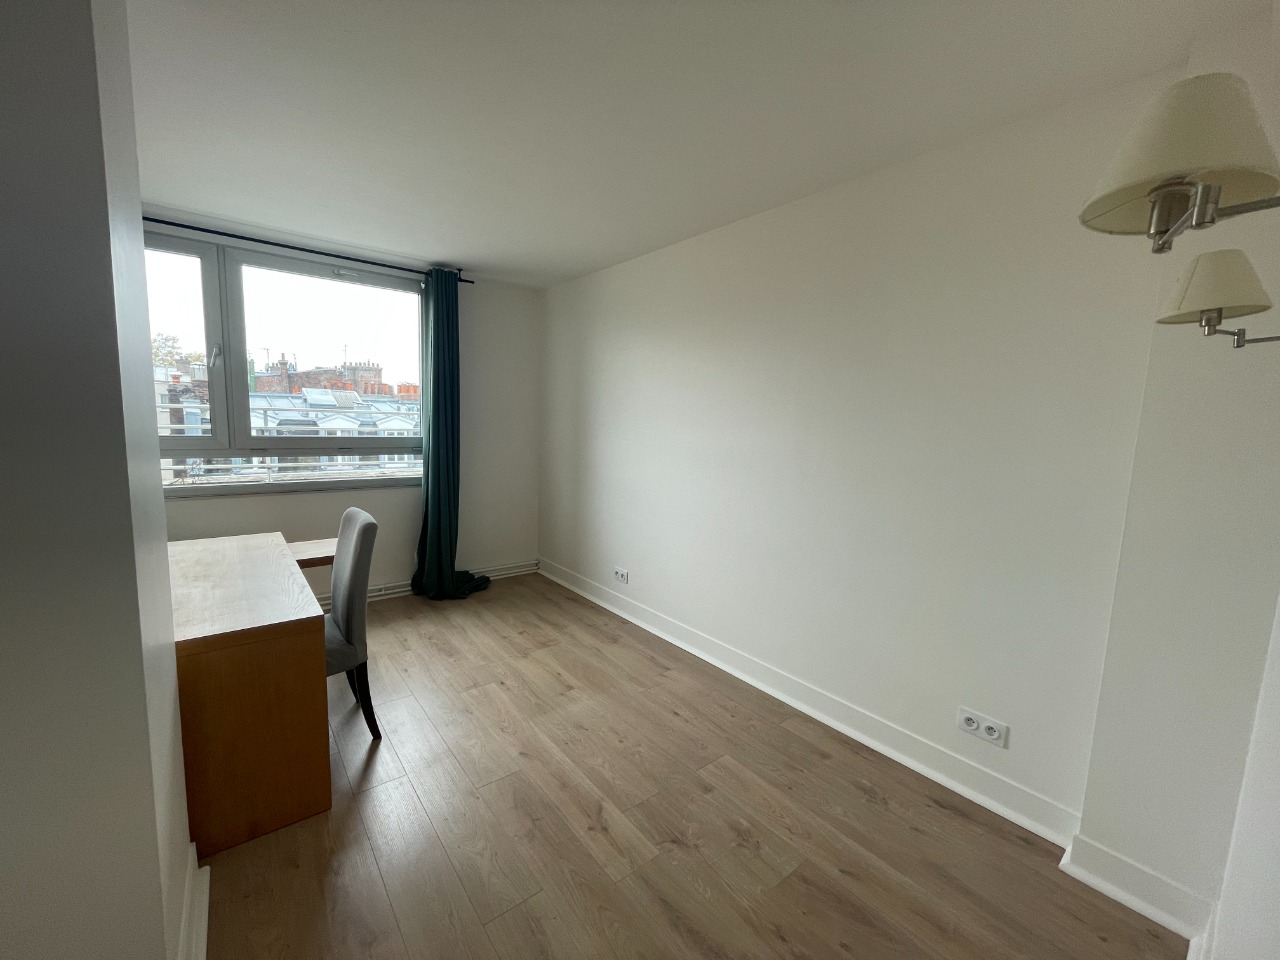 Lille republique t4 meuble de 90m2 balcon et parking Photo 7 - JLW Immobilier